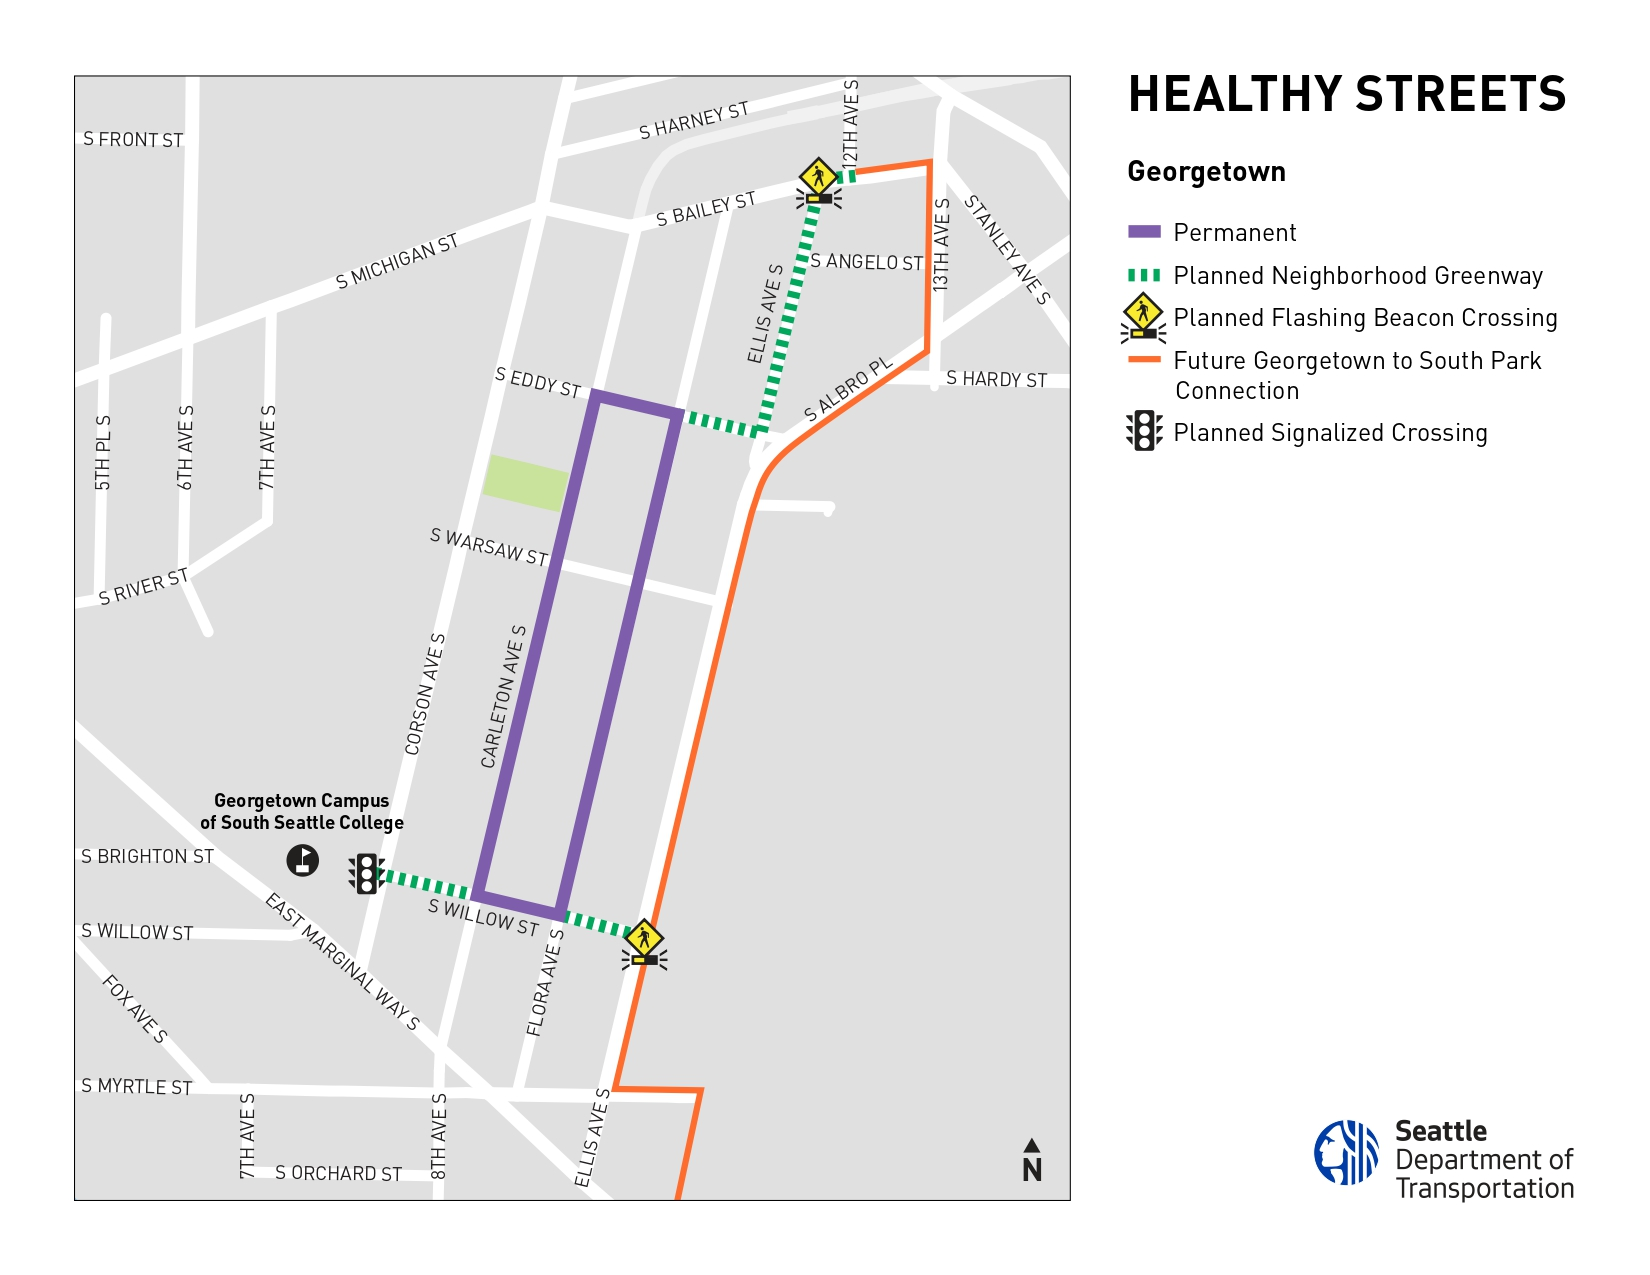 Georgetown Healthy Street Map